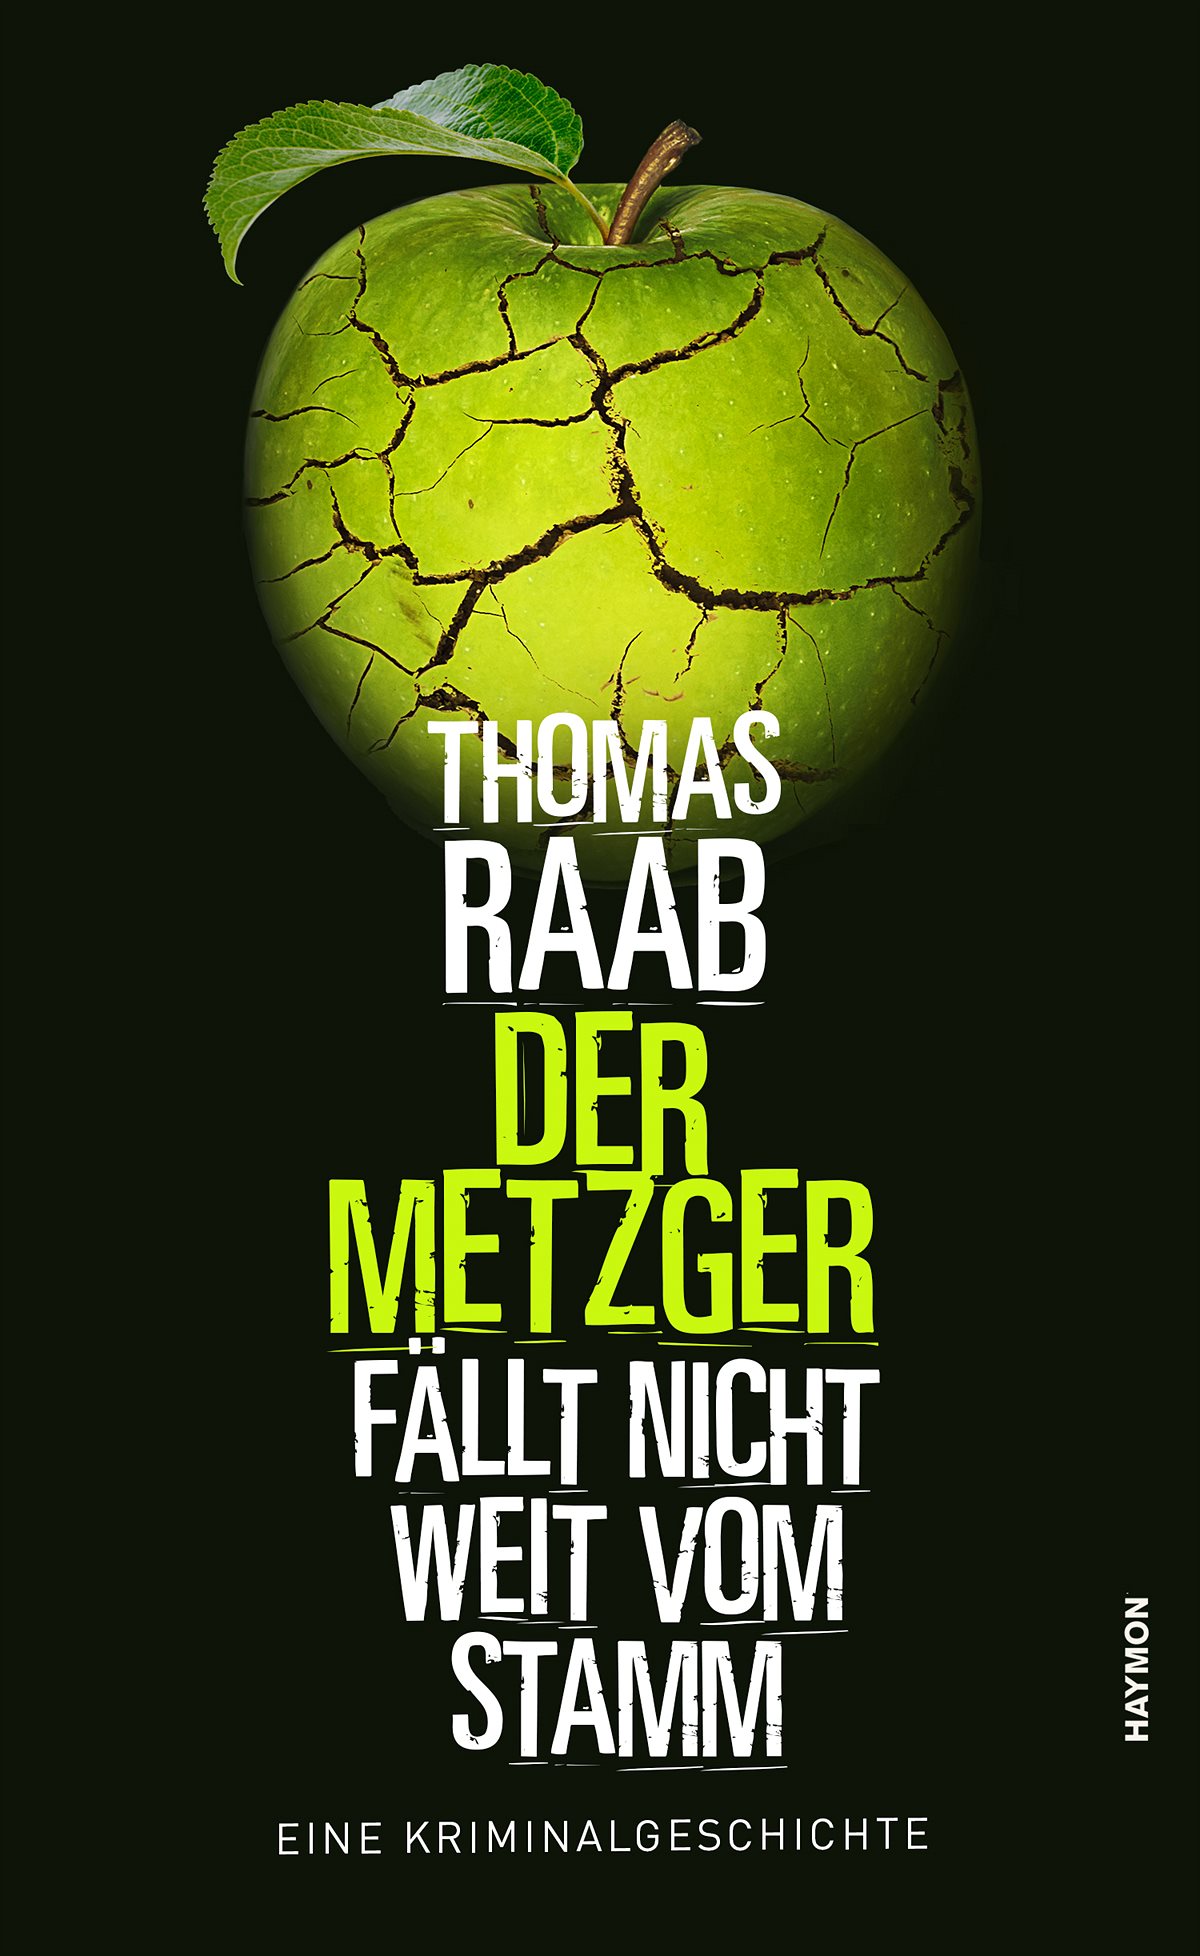 Der Metzger fällt nicht weit vom Stamm von Thomas Raab (136 Seiten) EUR 14,99